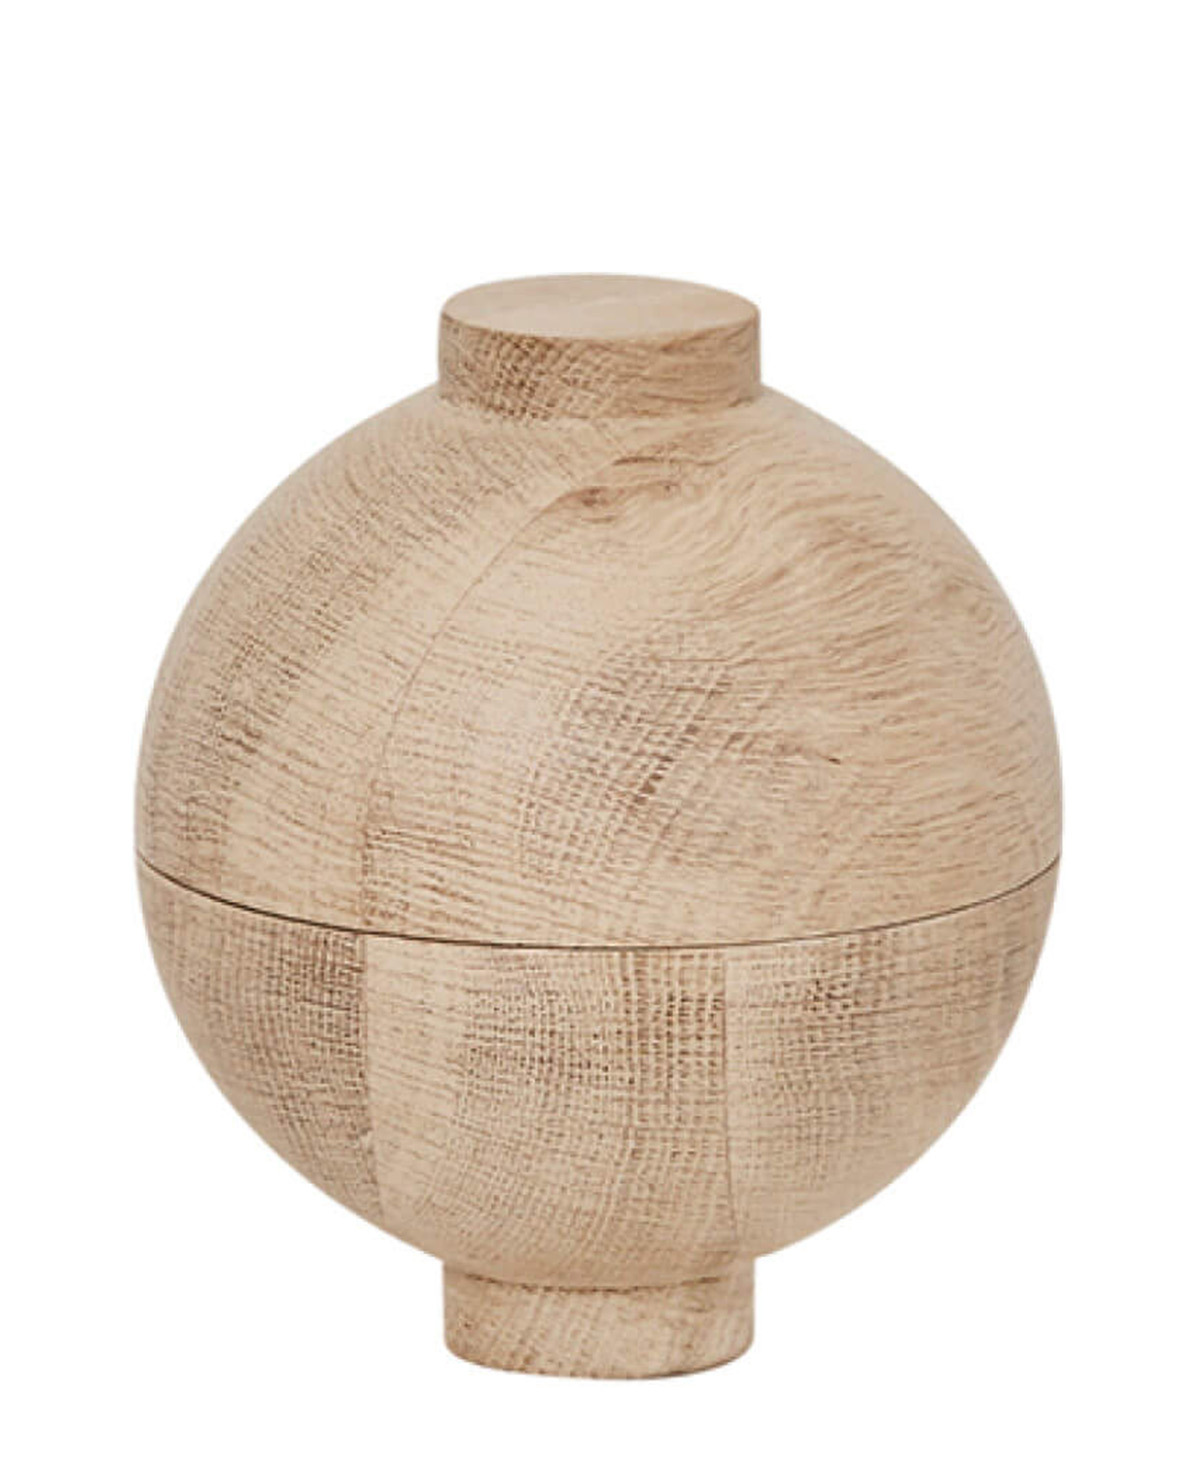 kristina dam studio aufbewahrungsgefÃ¤ÃŸ wooden sphere Ã˜ 16 cm solid oak